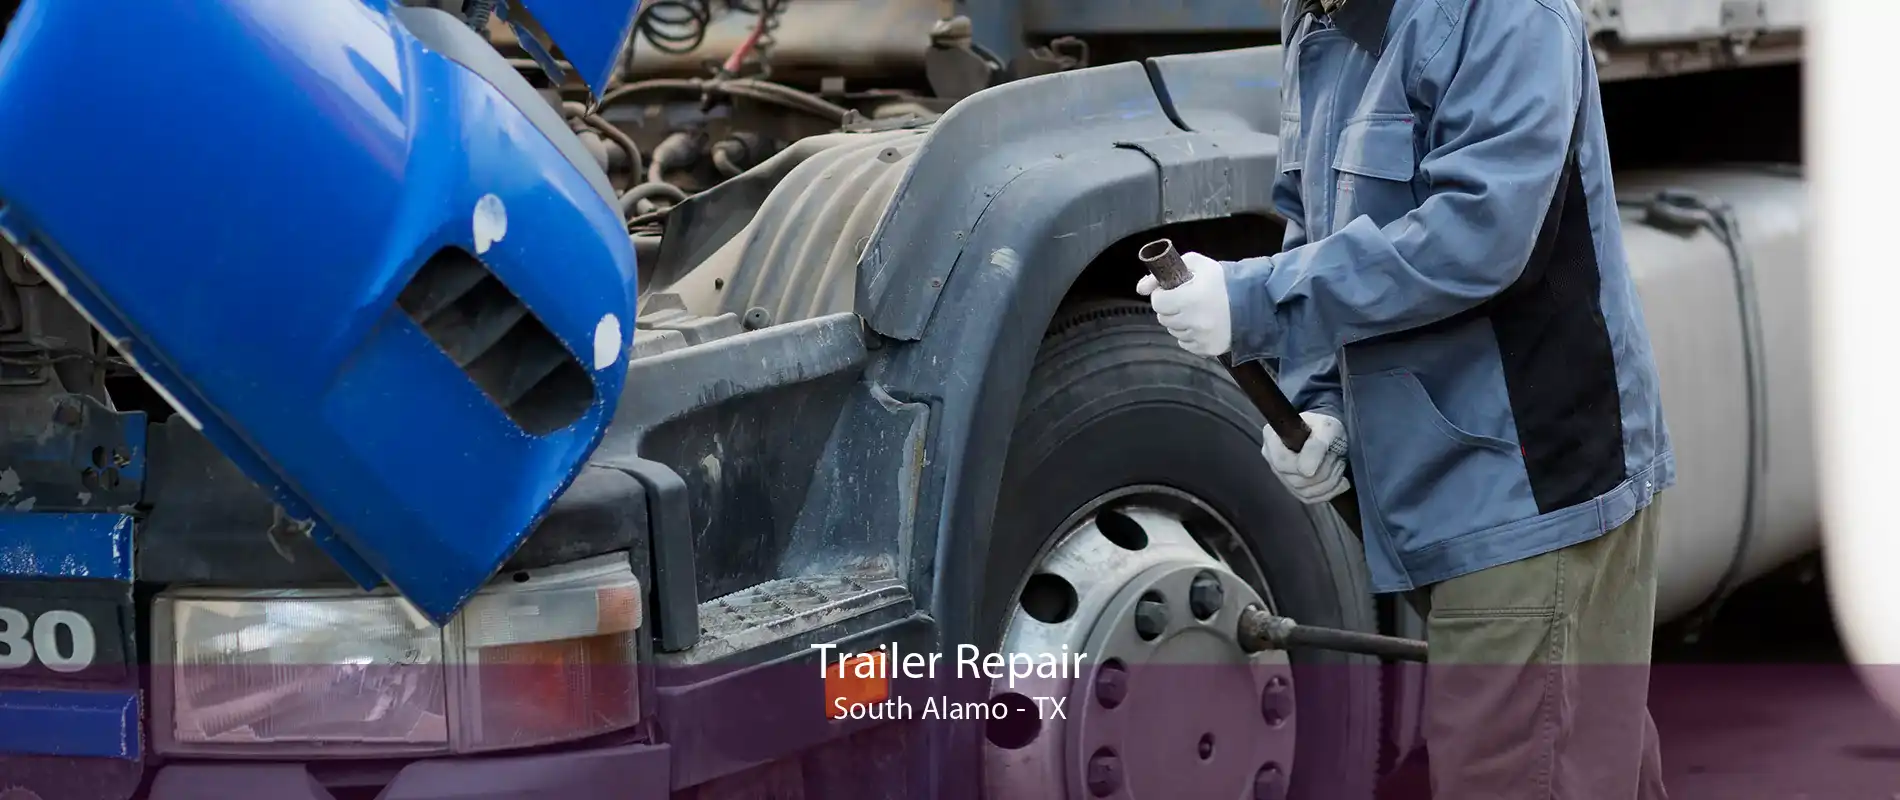 Trailer Repair South Alamo - TX